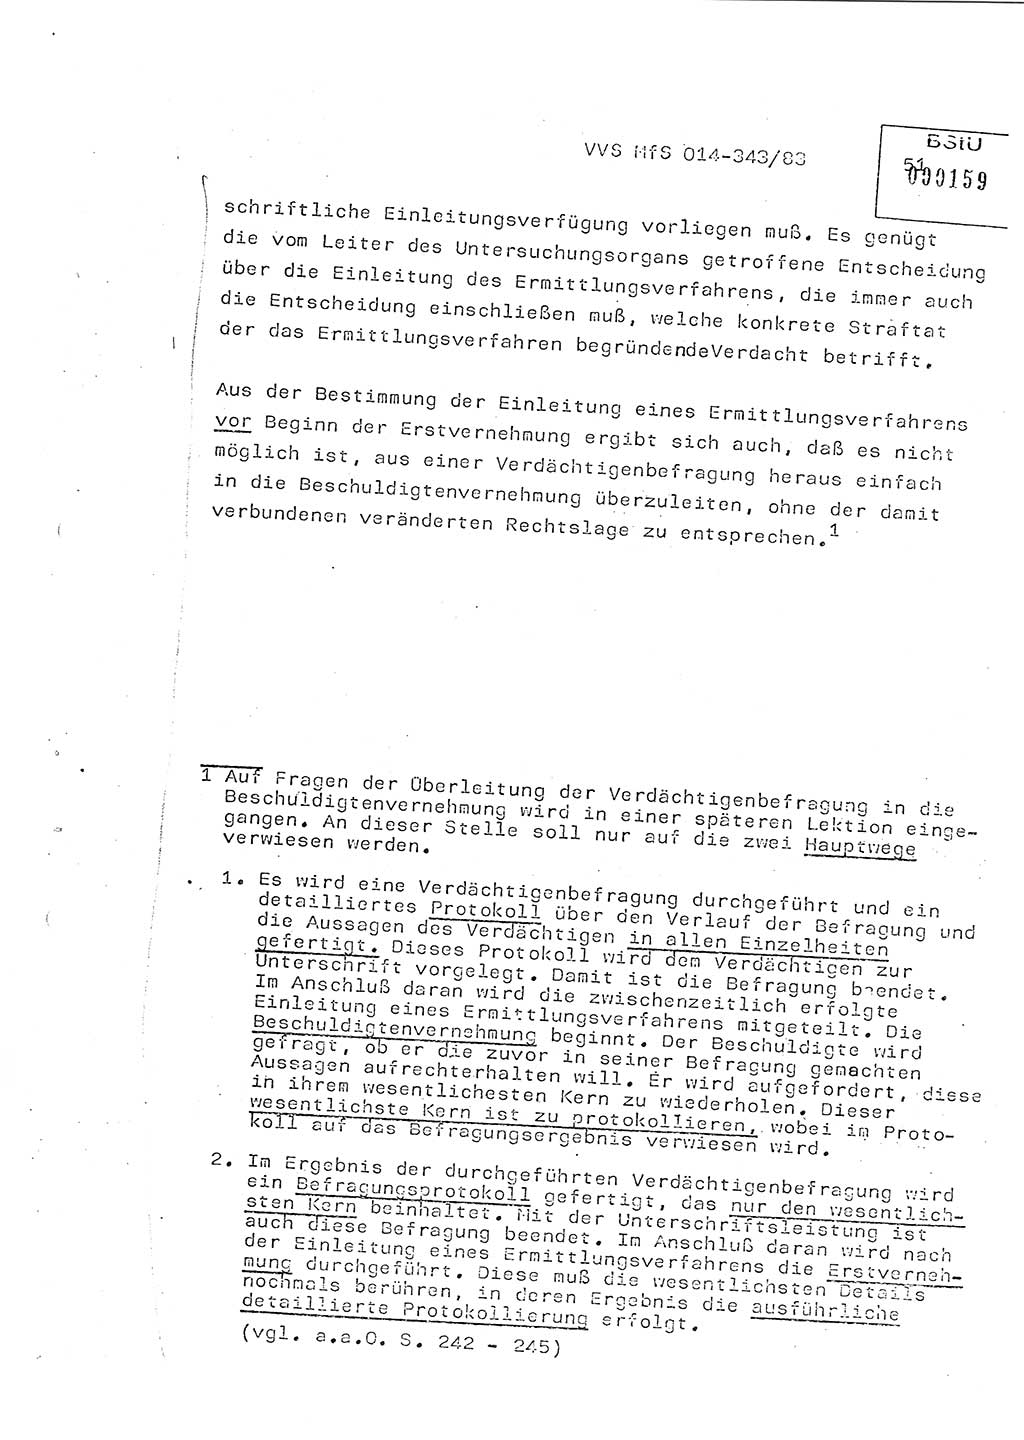 Lektion Ministerium für Staatssicherheit (MfS) [Deutsche Demokratische Republik (DDR)], Hauptabteilung (HA) Ⅸ, Vertrauliche Verschlußsache (VVS) o014-343/83, Berlin 1983, Seite 51 (Lekt. MfS DDR HA Ⅸ VVS o014-343/83 1983, S. 51)